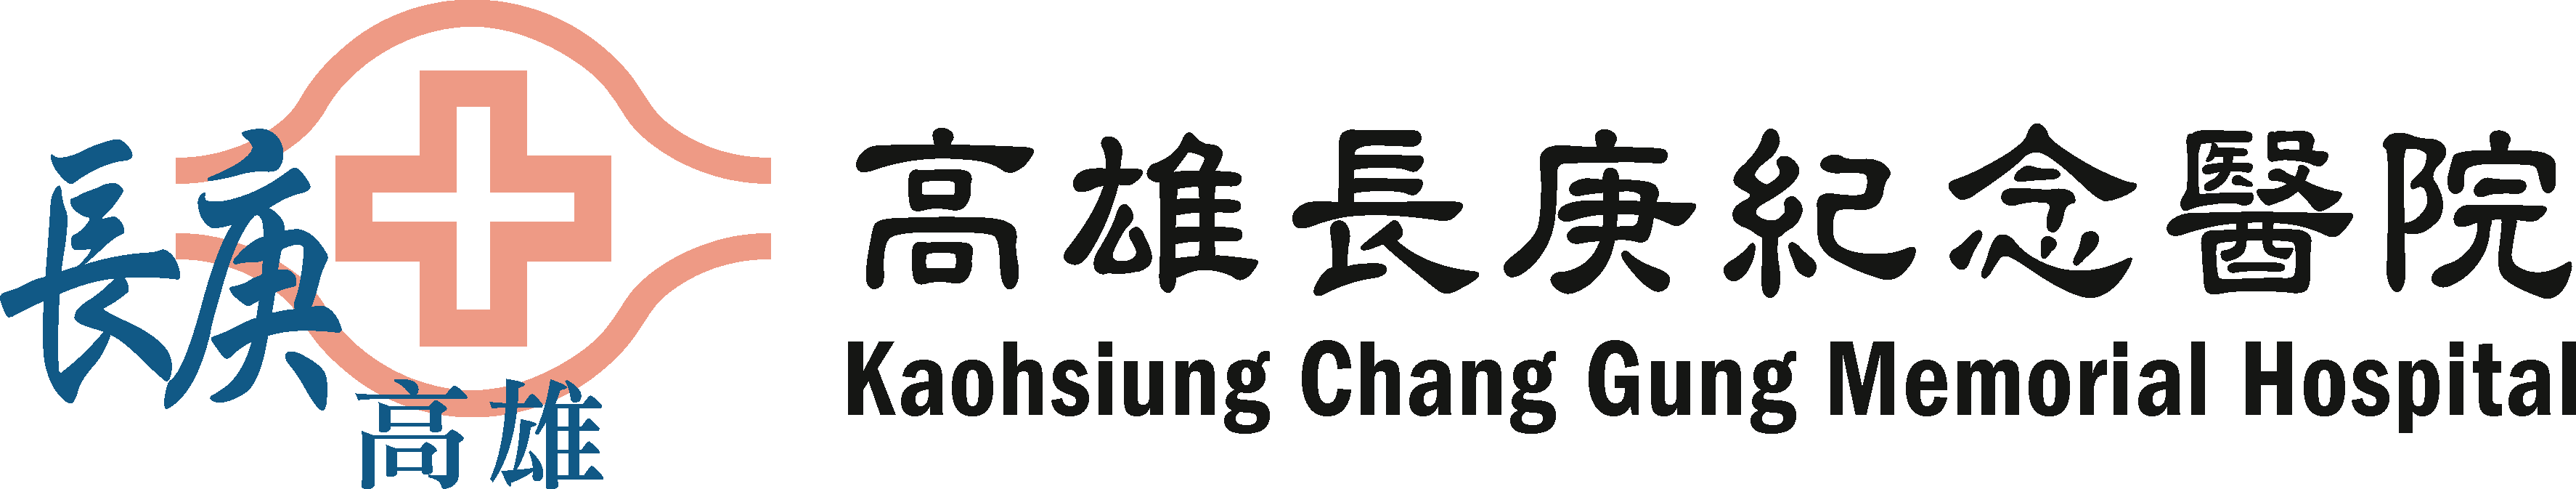 Chang Gung